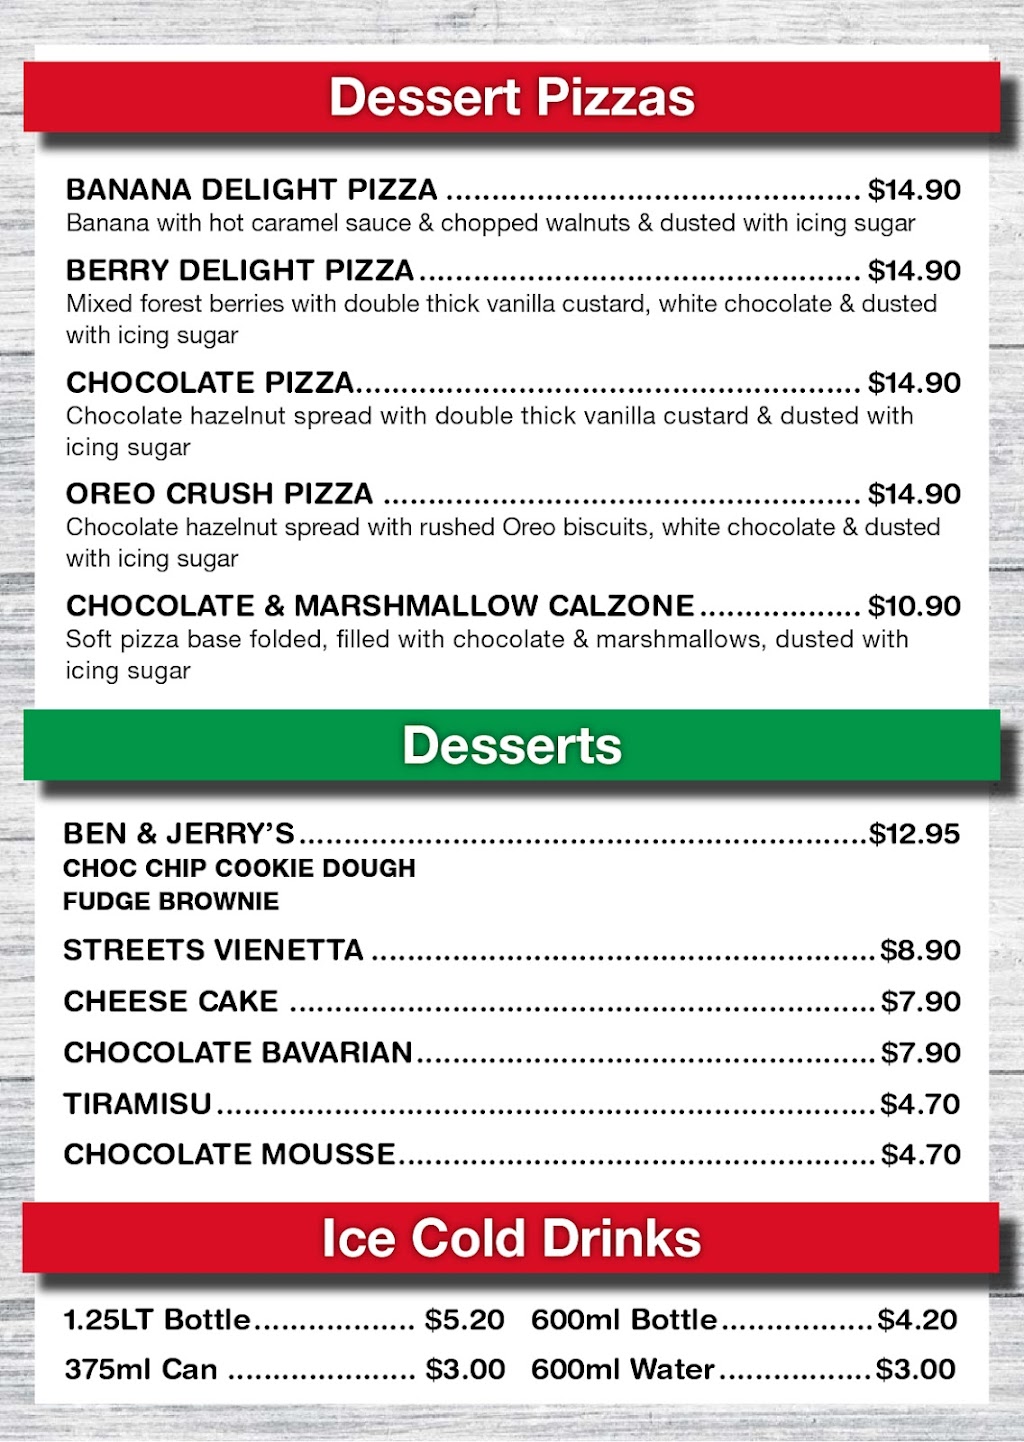 Pizza Inn | meal takeaway | 42/44 Terrigal Esplanade, Terrigal NSW 2260, Australia | 0243858833 OR +61 2 4385 8833